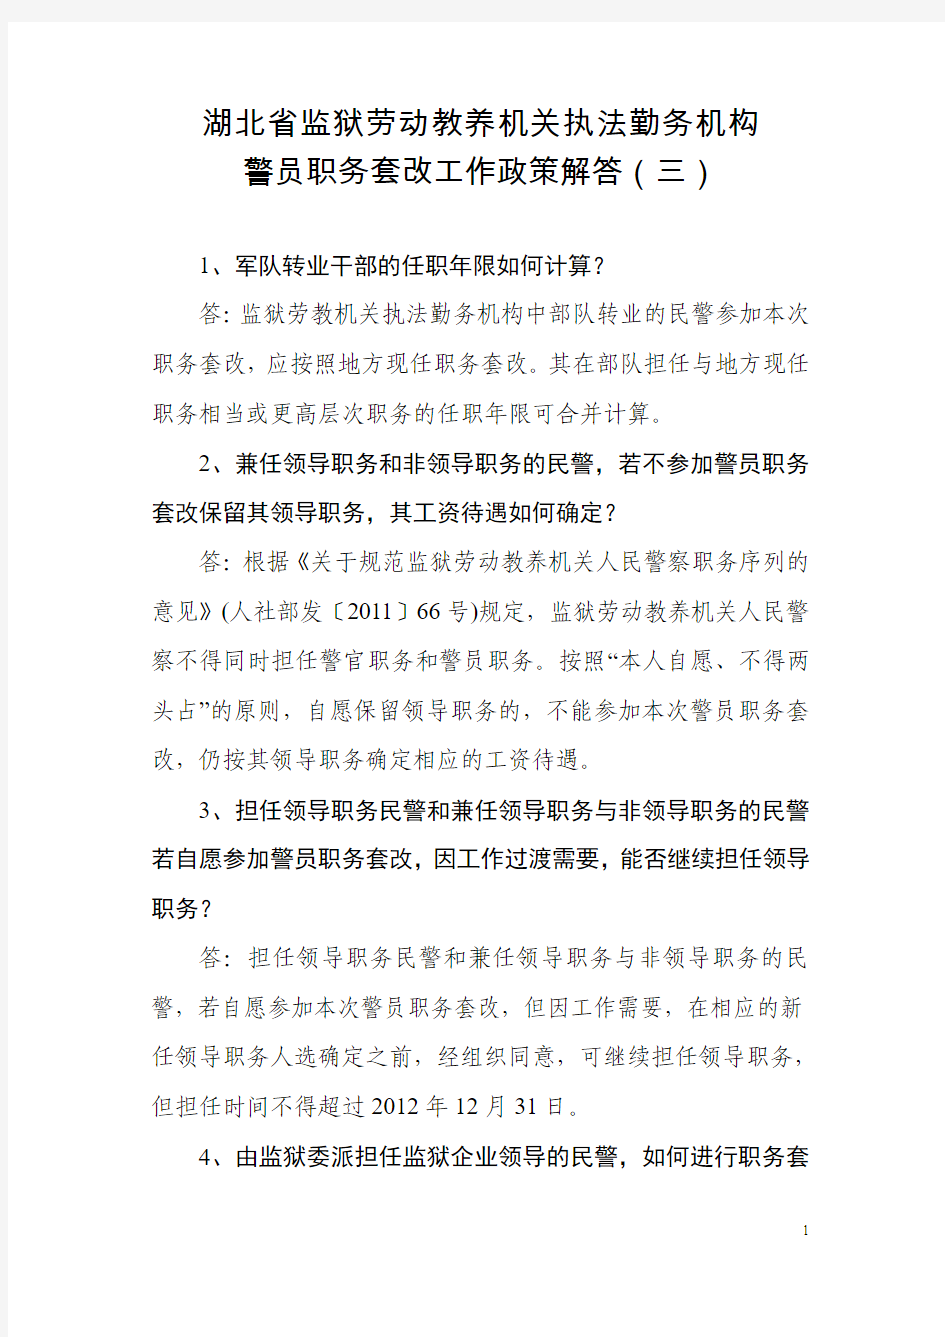 湖北省监狱劳动教养机构警员职务套改工作政策解答(三)